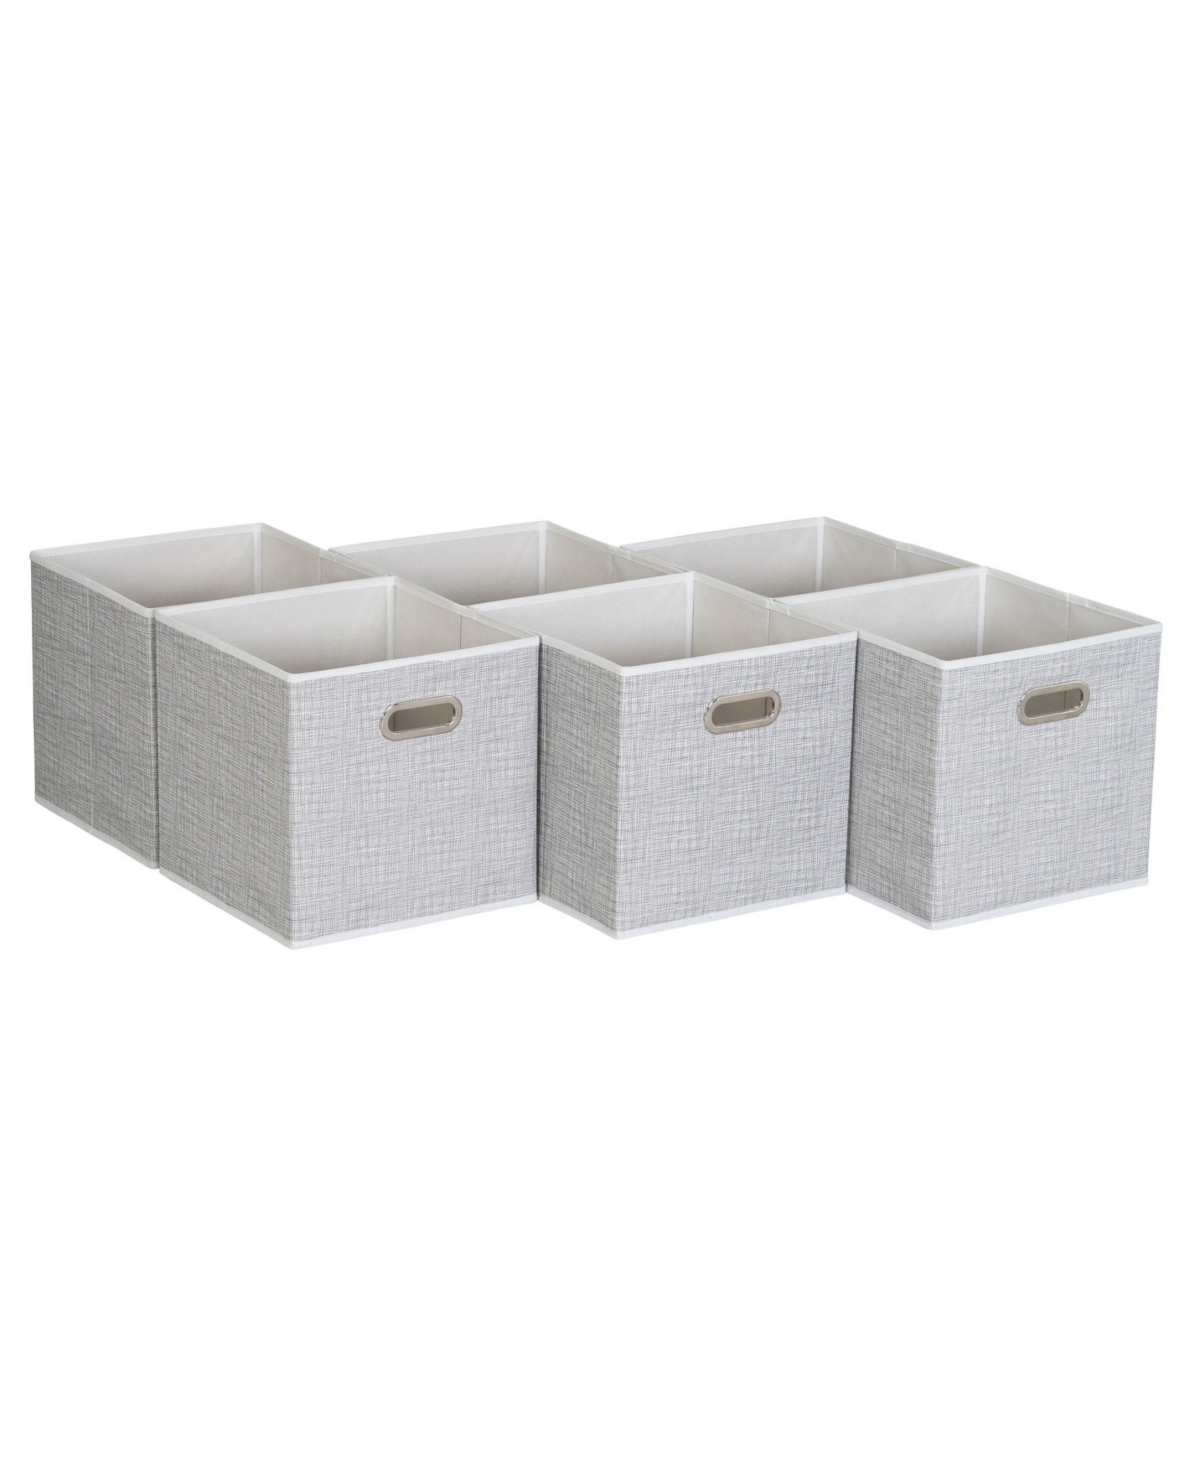 6 ct Open Fabric Cube Storage Bins - Multi Color